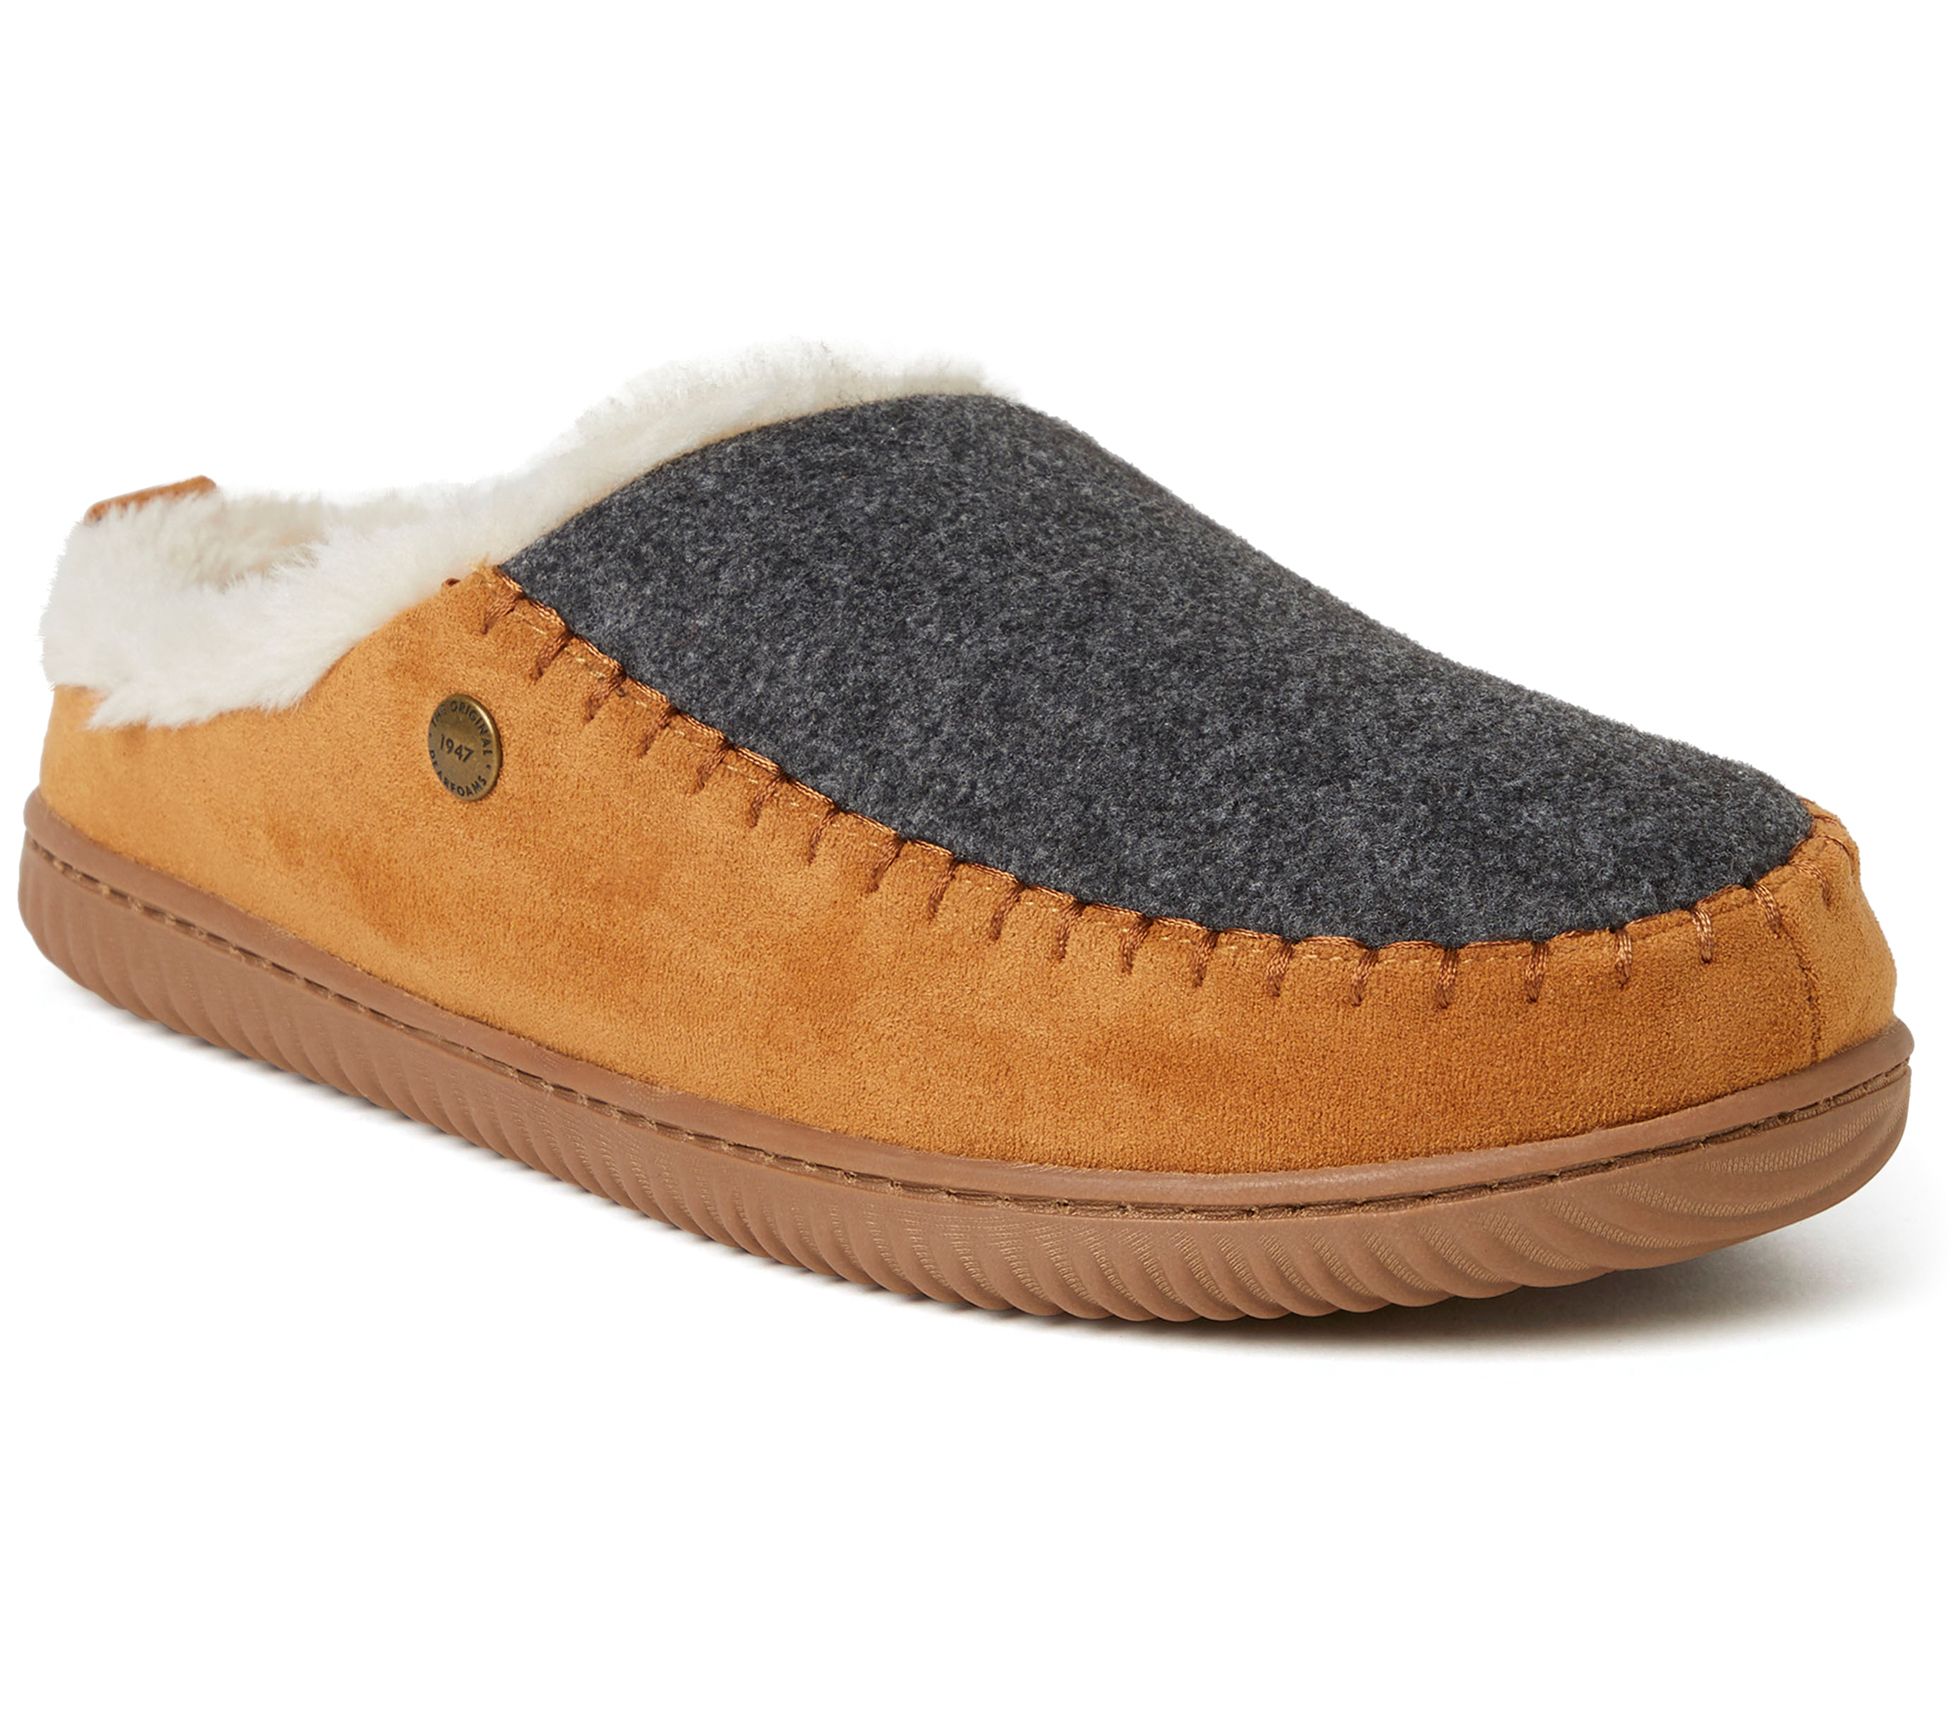 dearfoam men's clog slippers